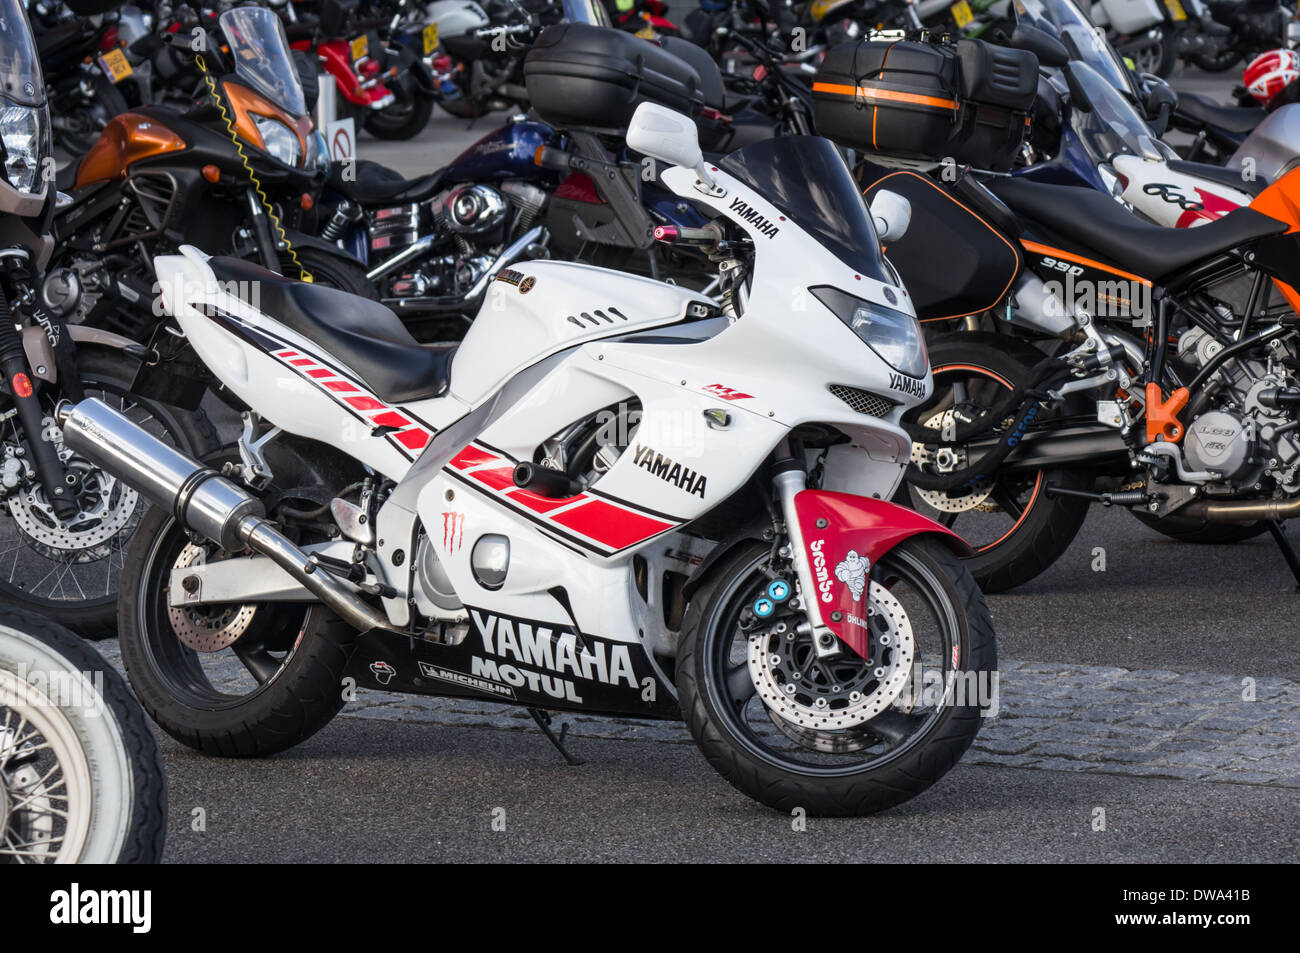 Yamaha Motorcycle garé avec d'autres sports et motos classiques, Londres Angleterre Royaume-Uni Banque D'Images